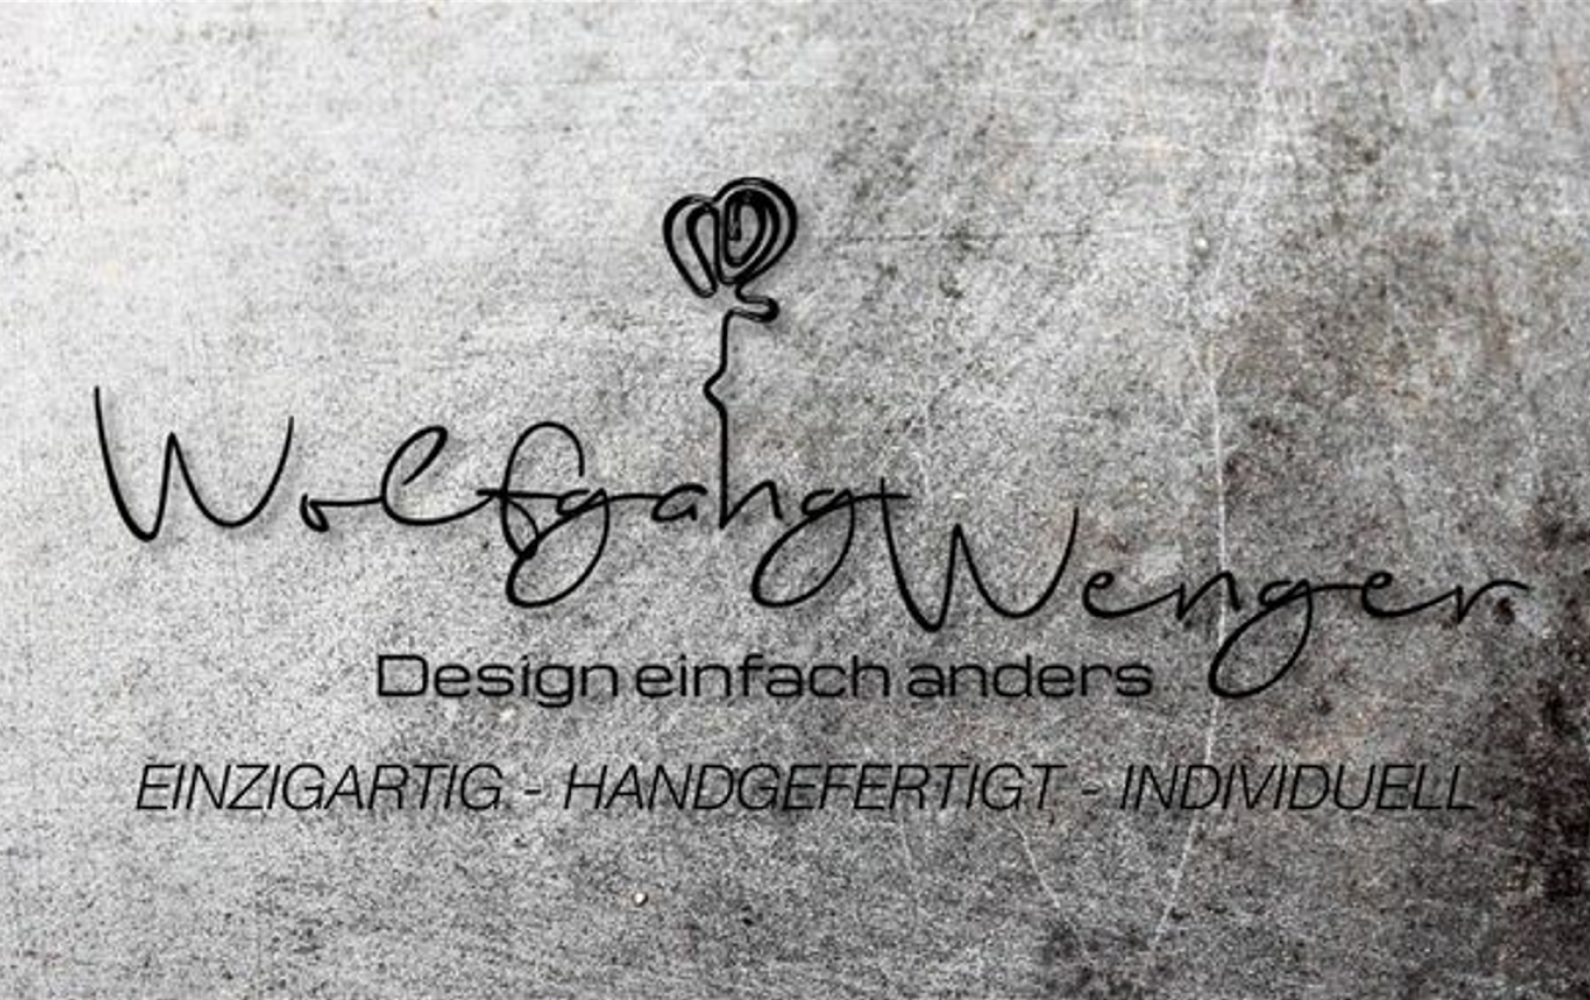 Wolfgang Wenger - Design einfach anders Headerbild